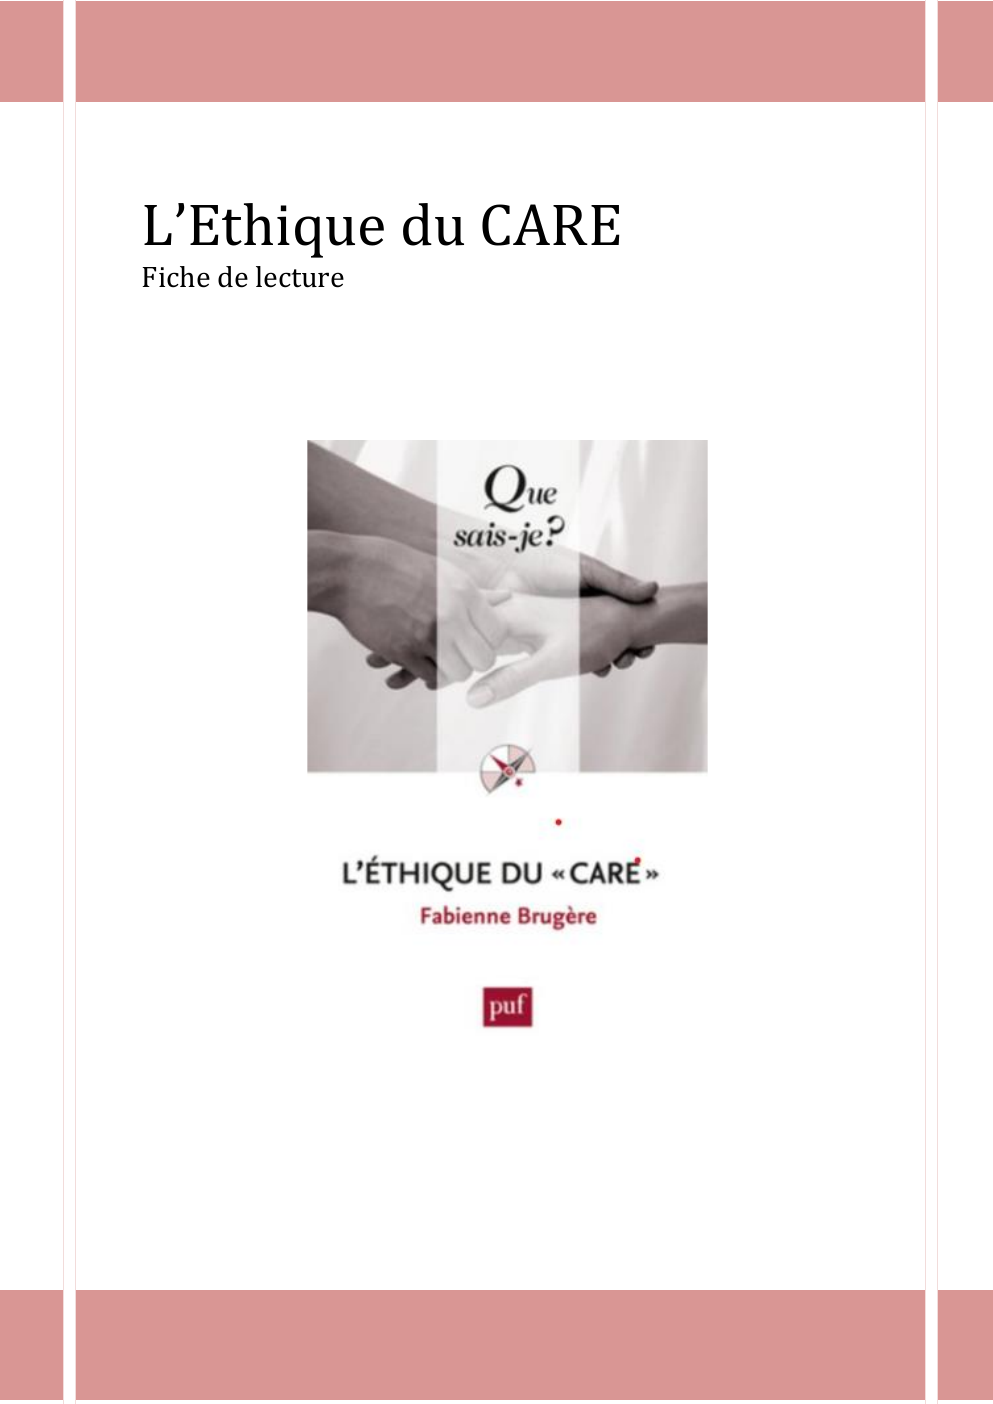 Prévisualisation du document éthique du care - Fabienne Brugère